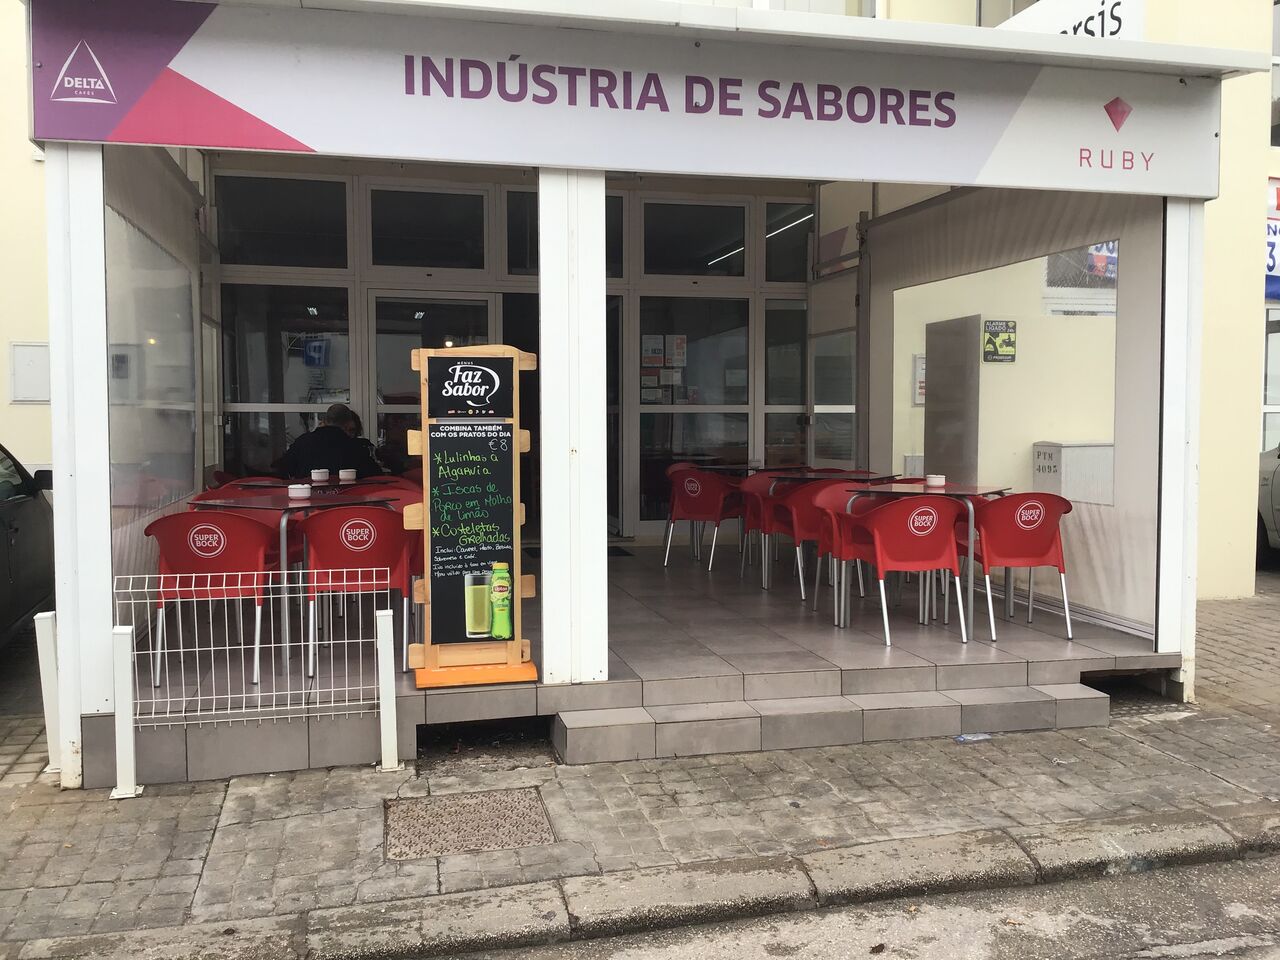 Indústria de Sabores - Restaurant Portimão | Portuguese ...